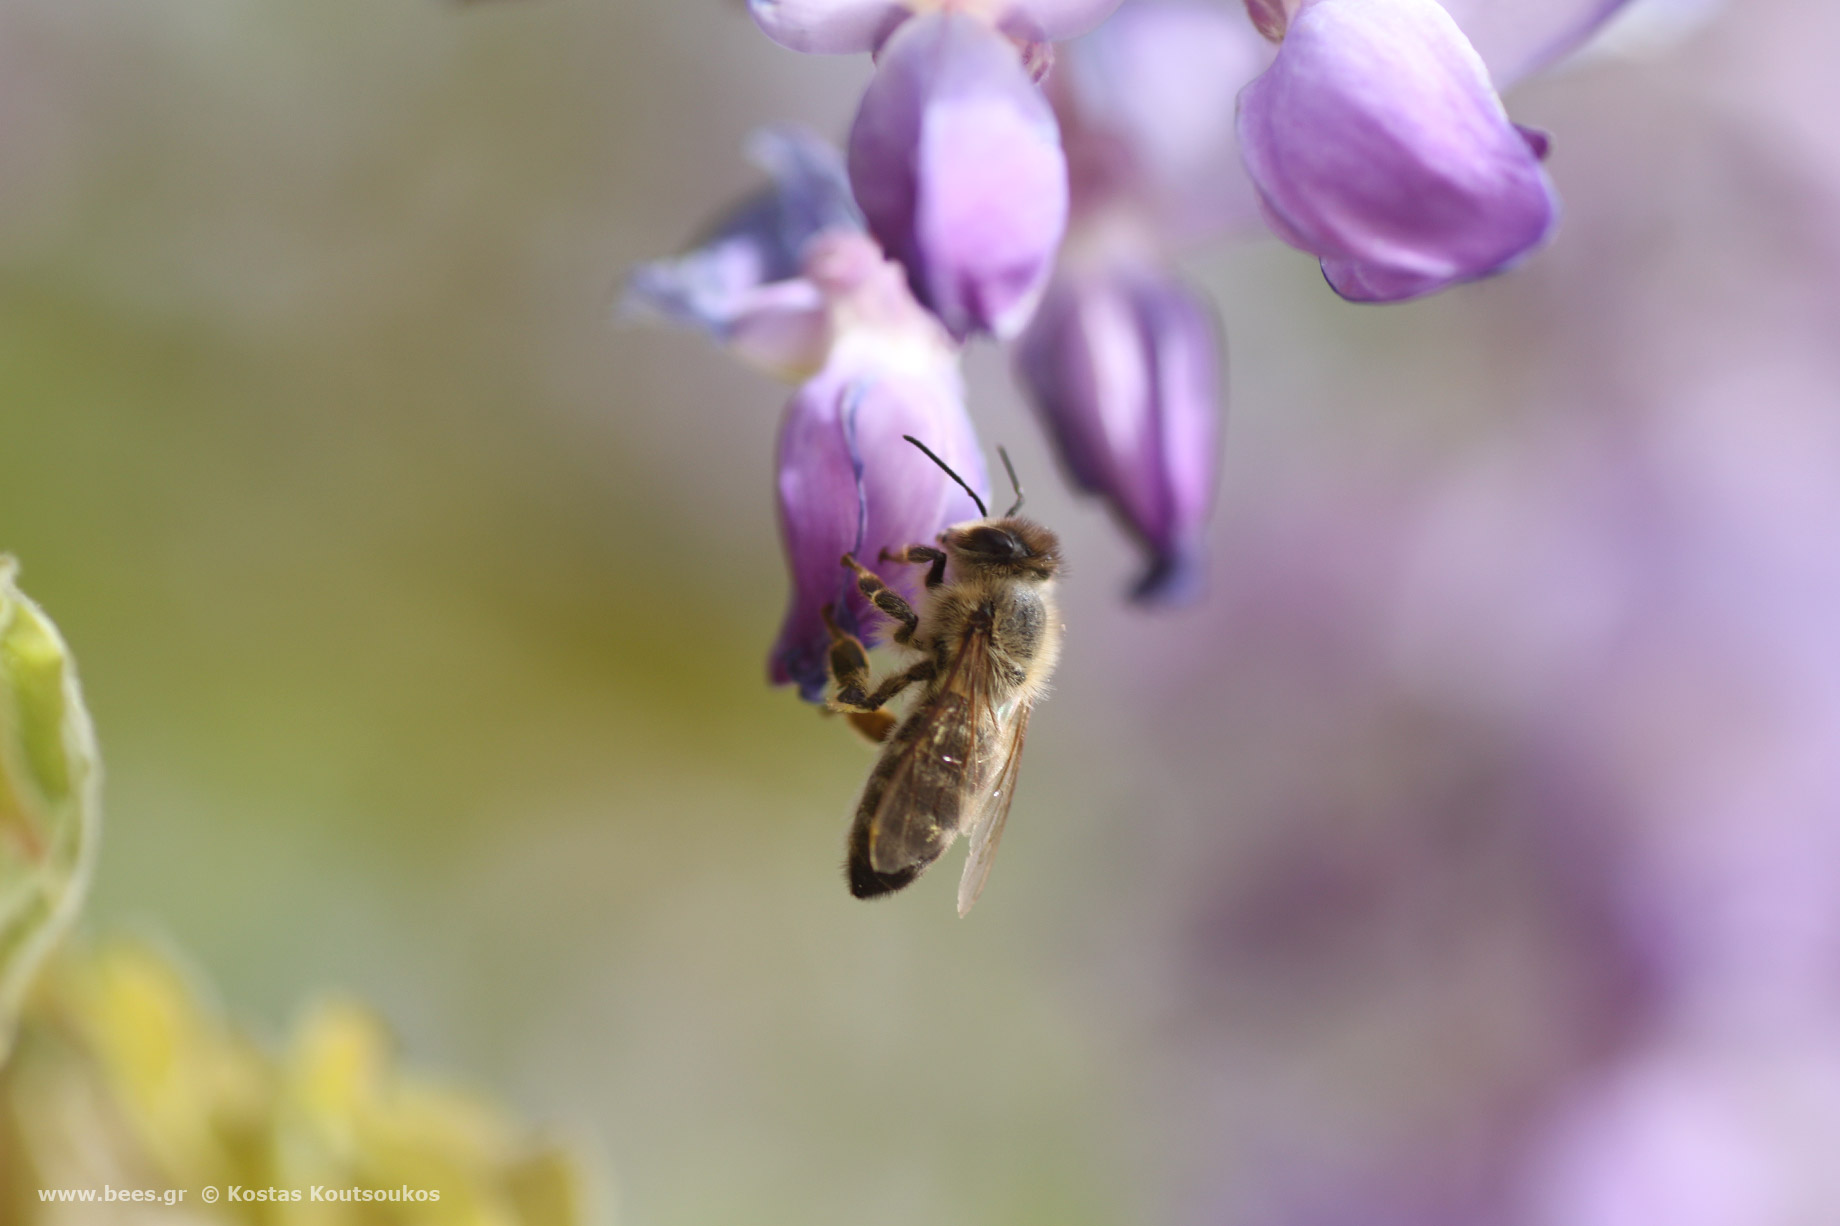 Γλιτσίνια (wisteria) και μέλισσα